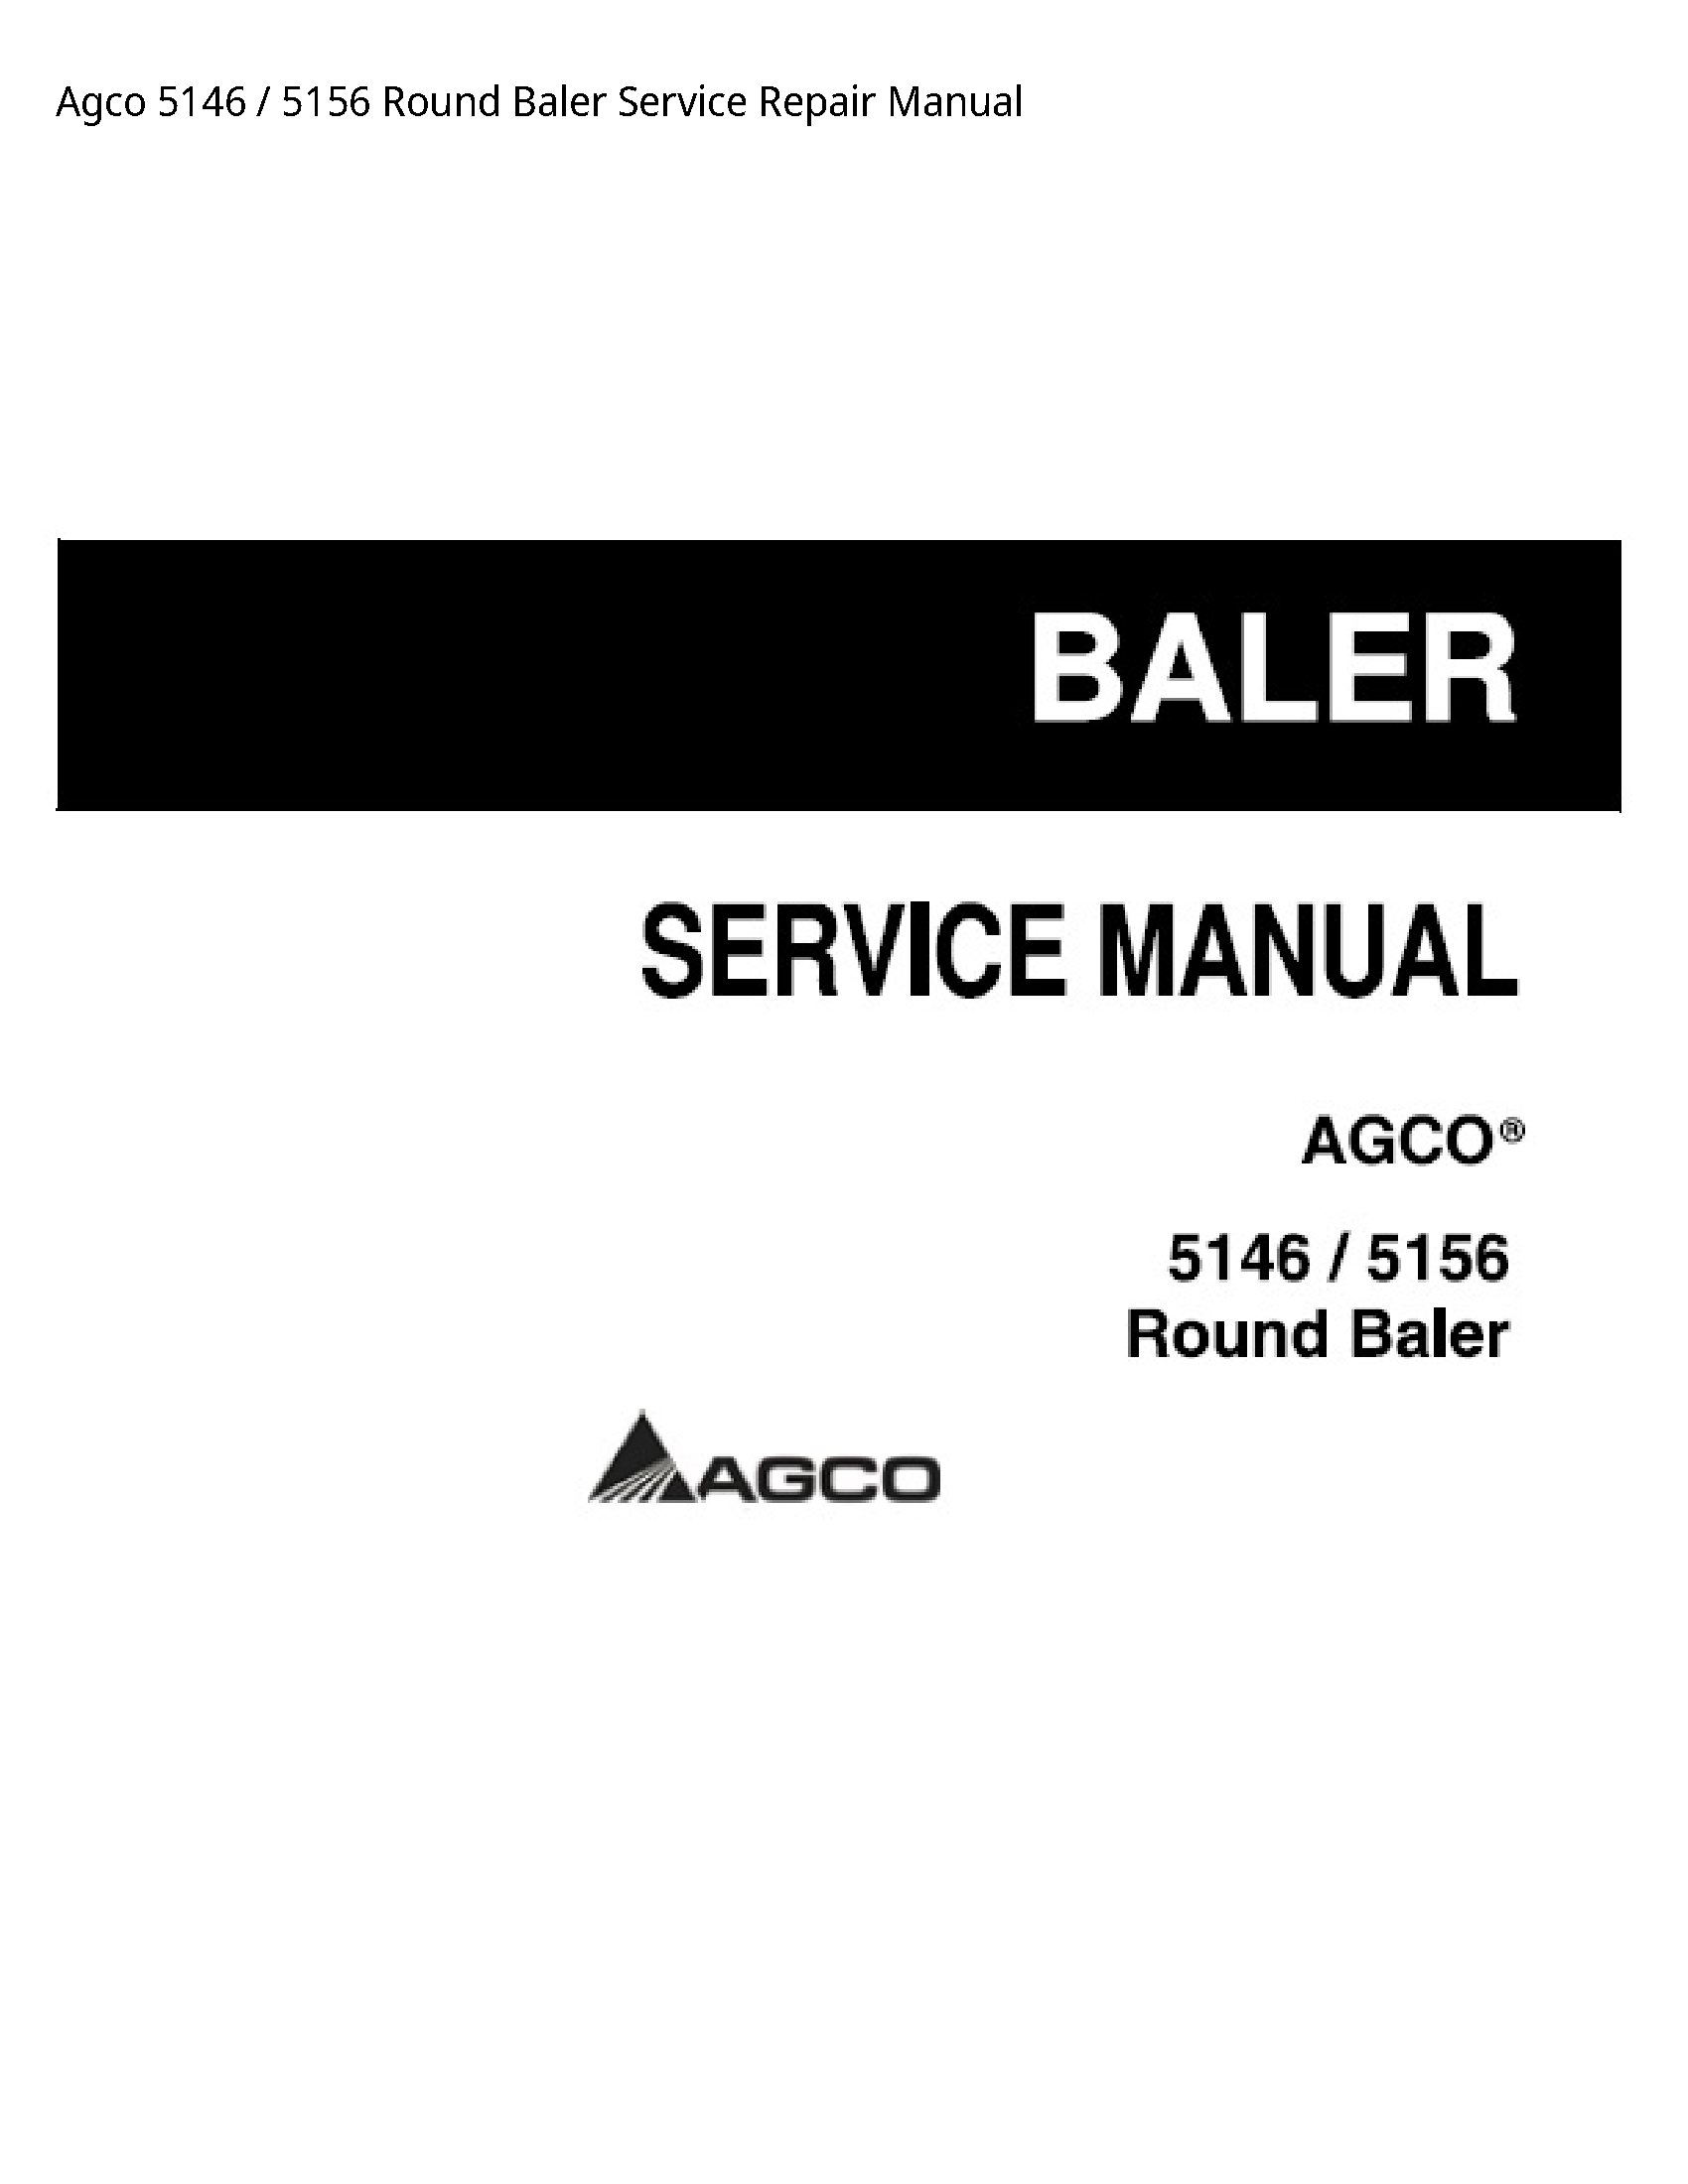 AGCO 5146 Round Baler manual